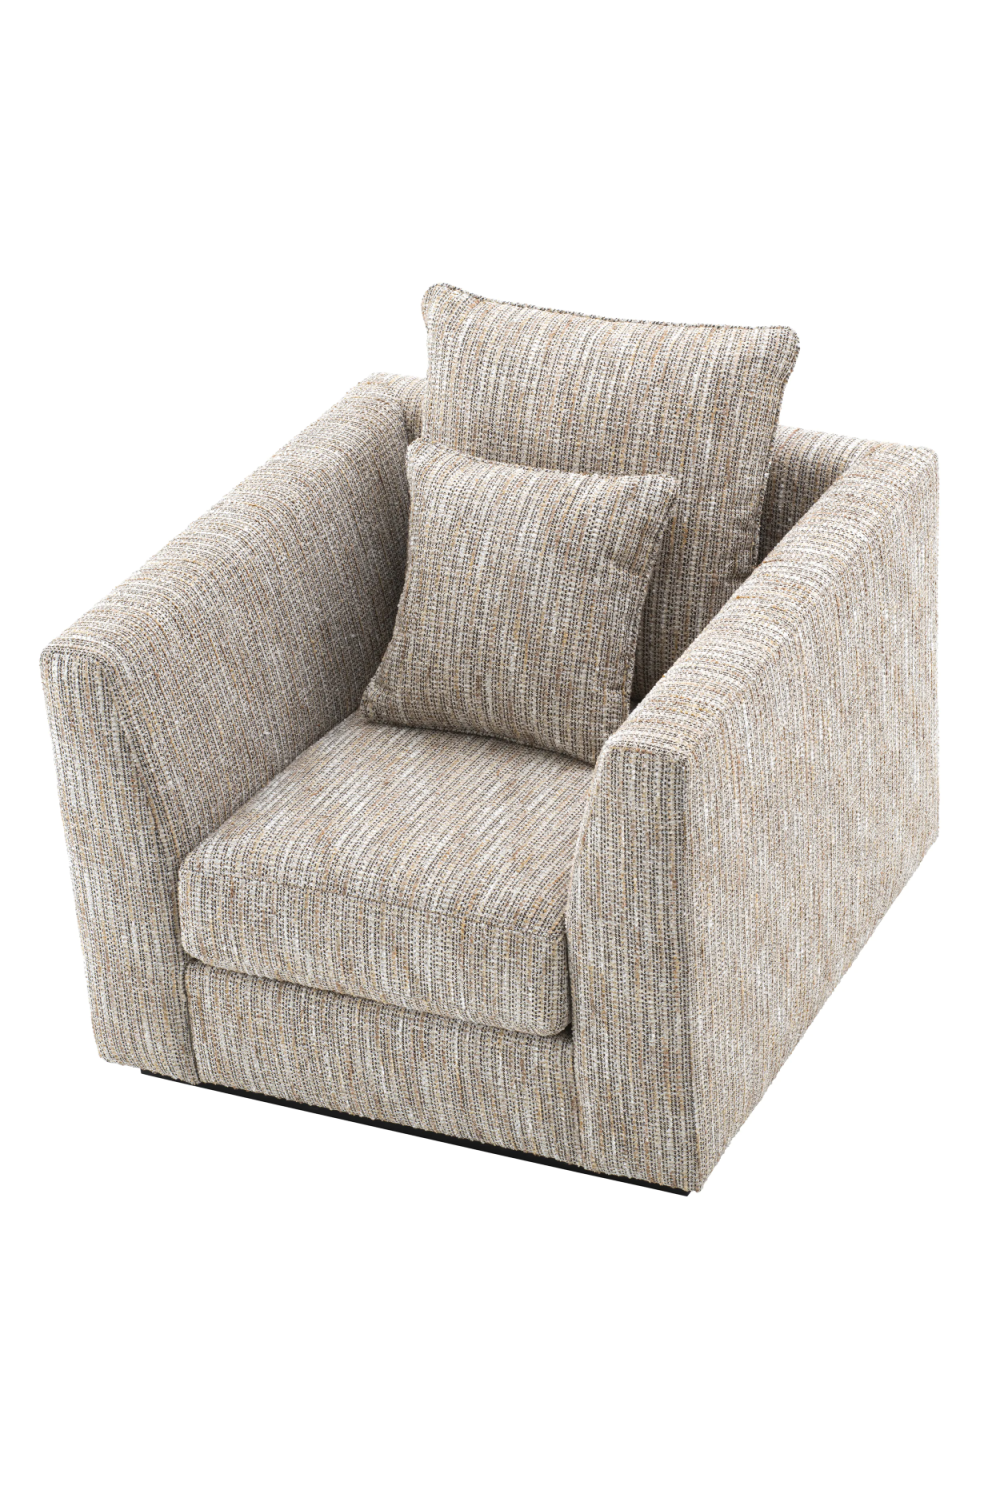 Modern Barrel Chair With Cushions | Eichholtz Taylor | Oroatrade.com